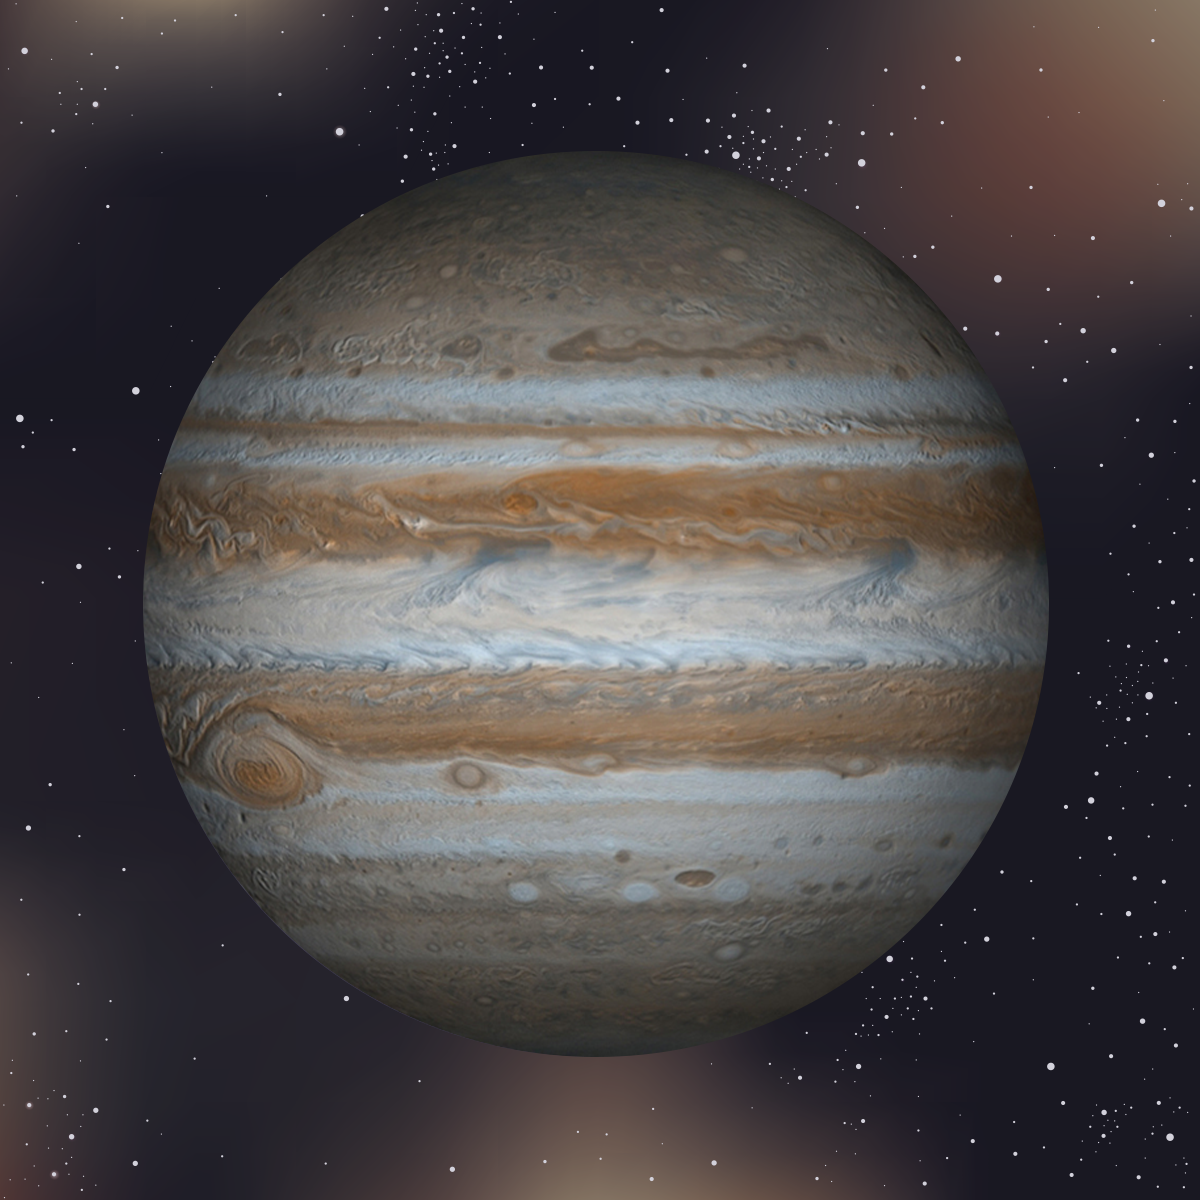 Jupiter in Virgo